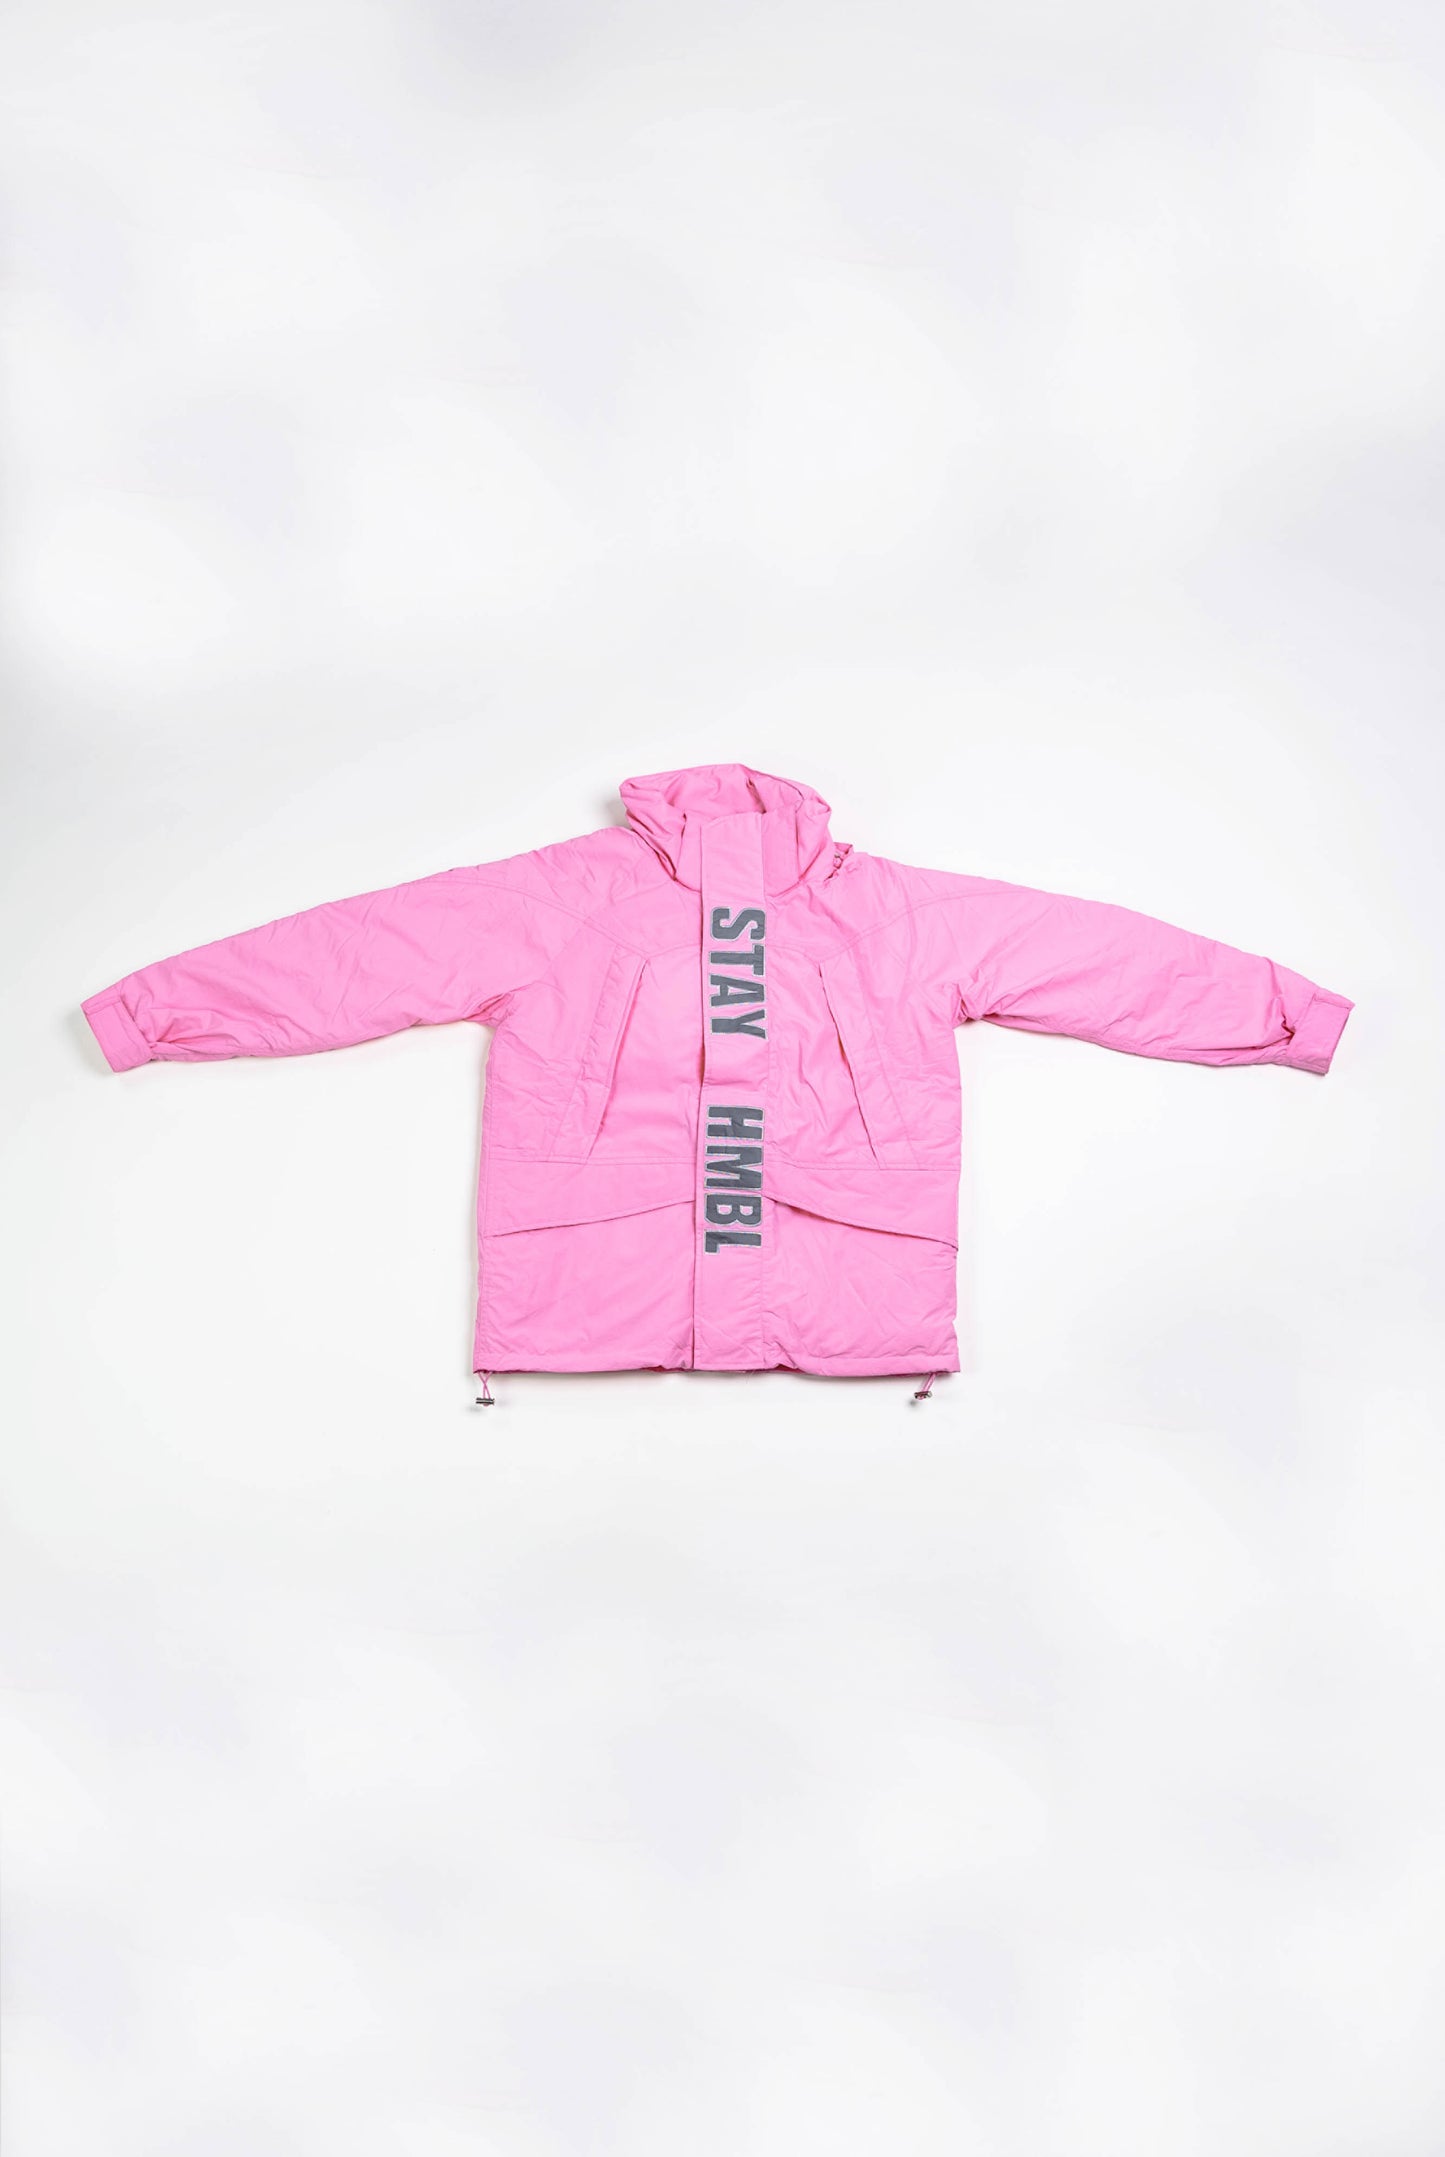 Pink reflective HMBL jacket